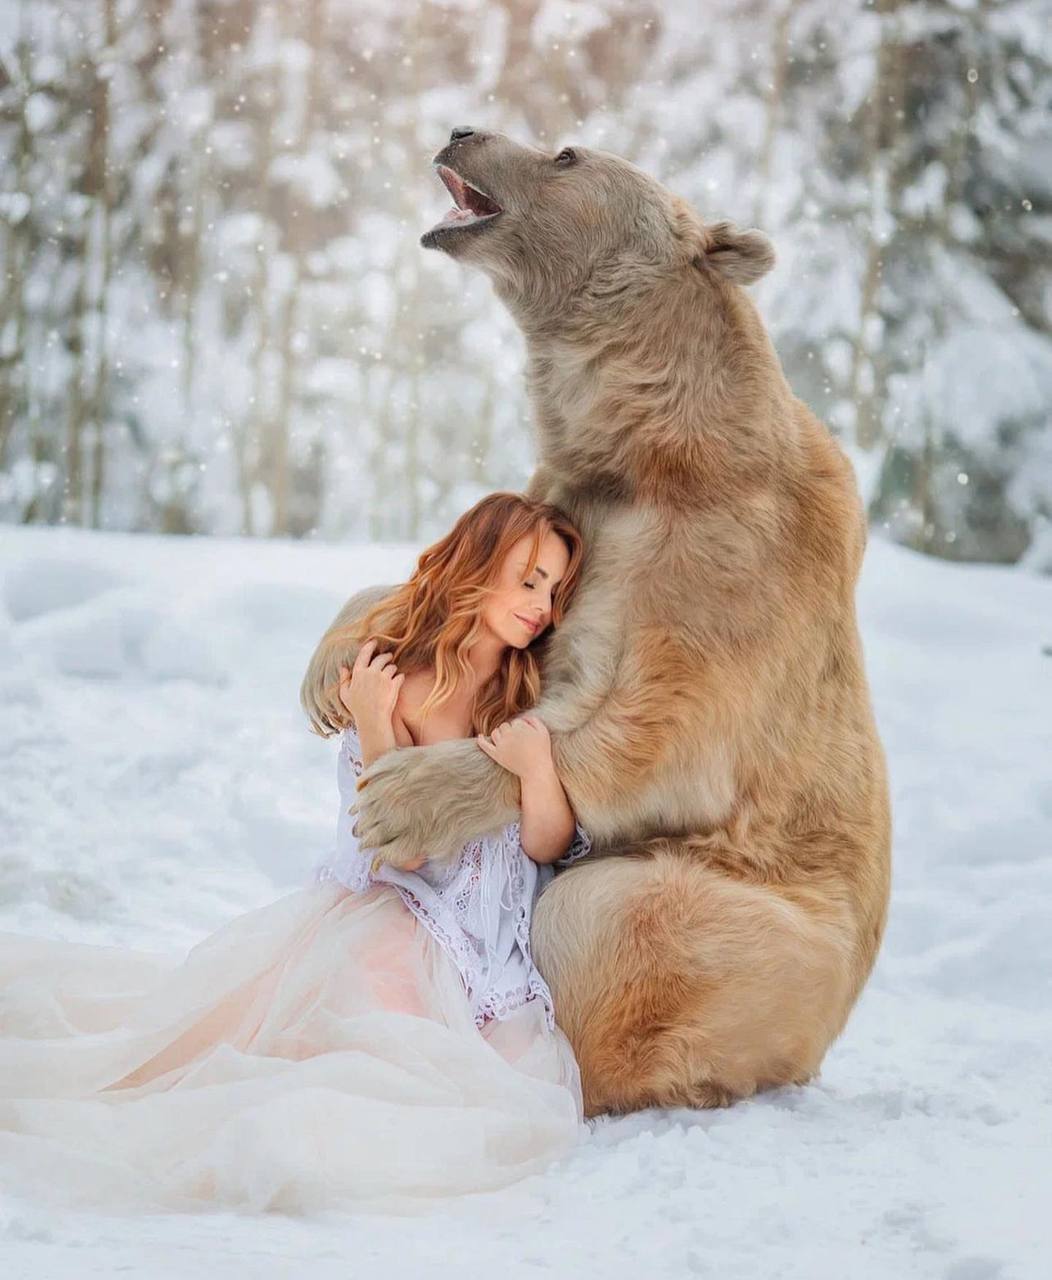 Певицу МакSим раскритиковали за фотосессию с медведем - 2x2.su картинка 3